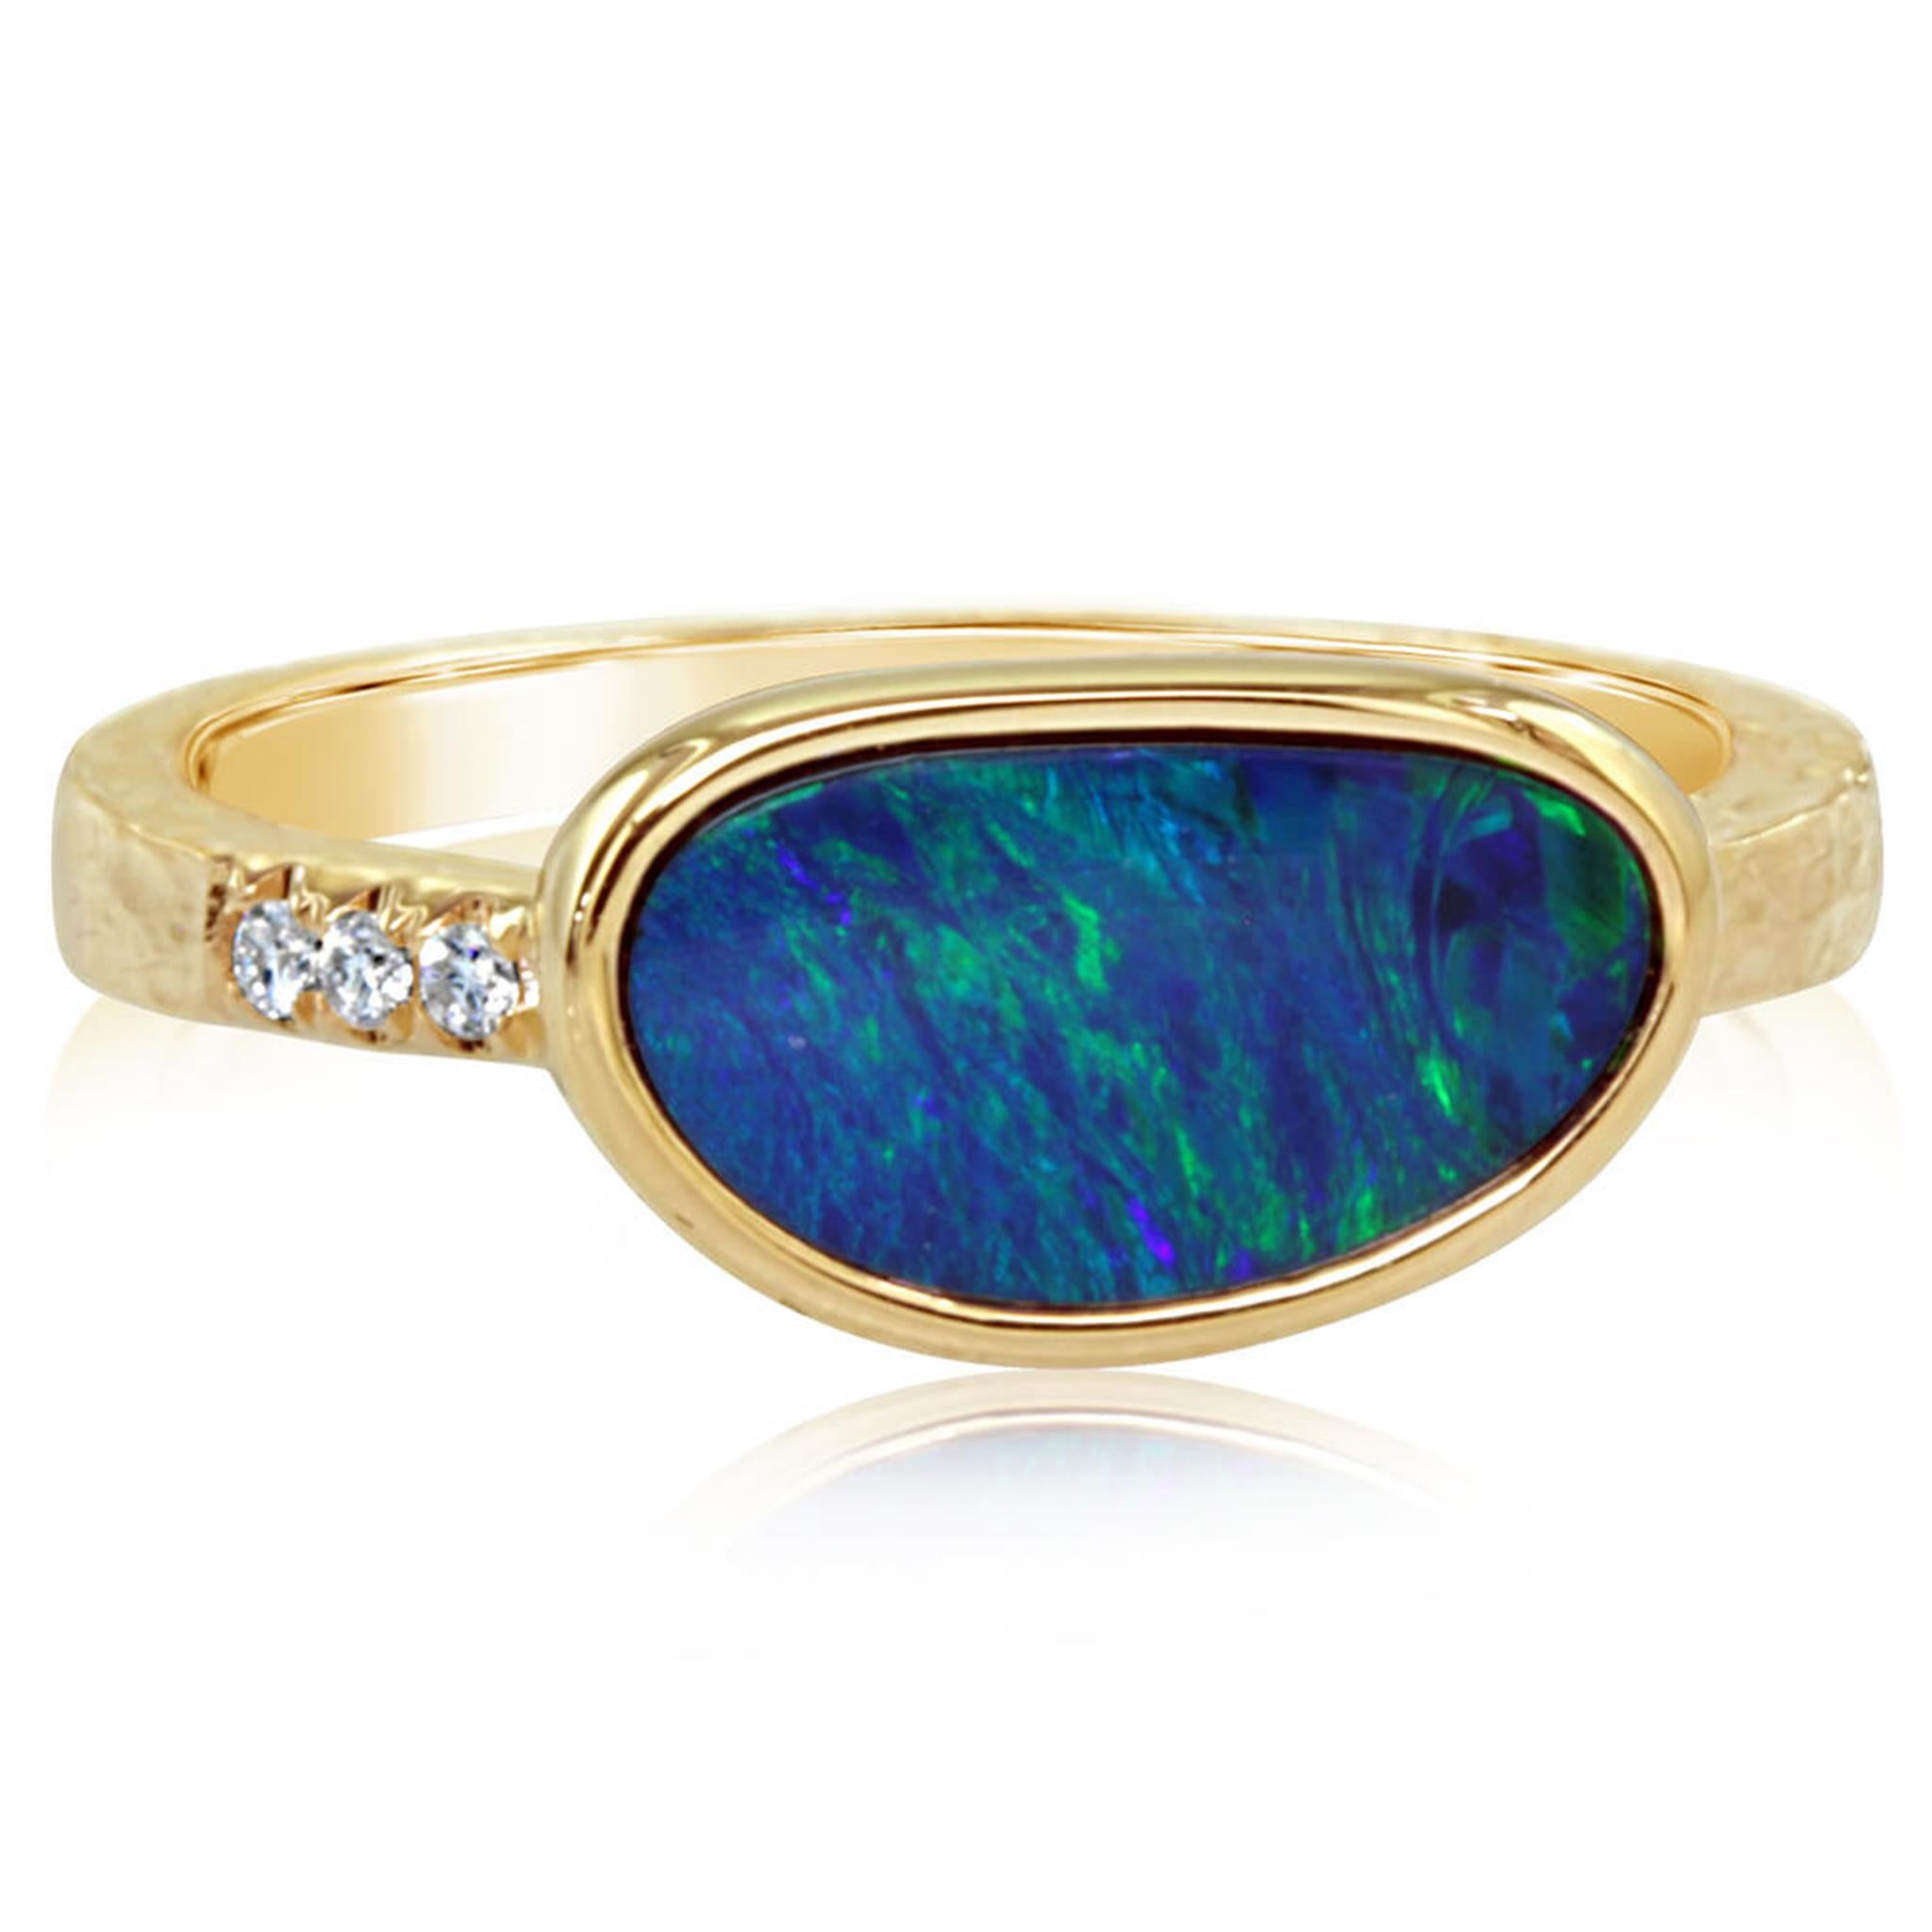 Search - Australian Opal Jewellery Online Store